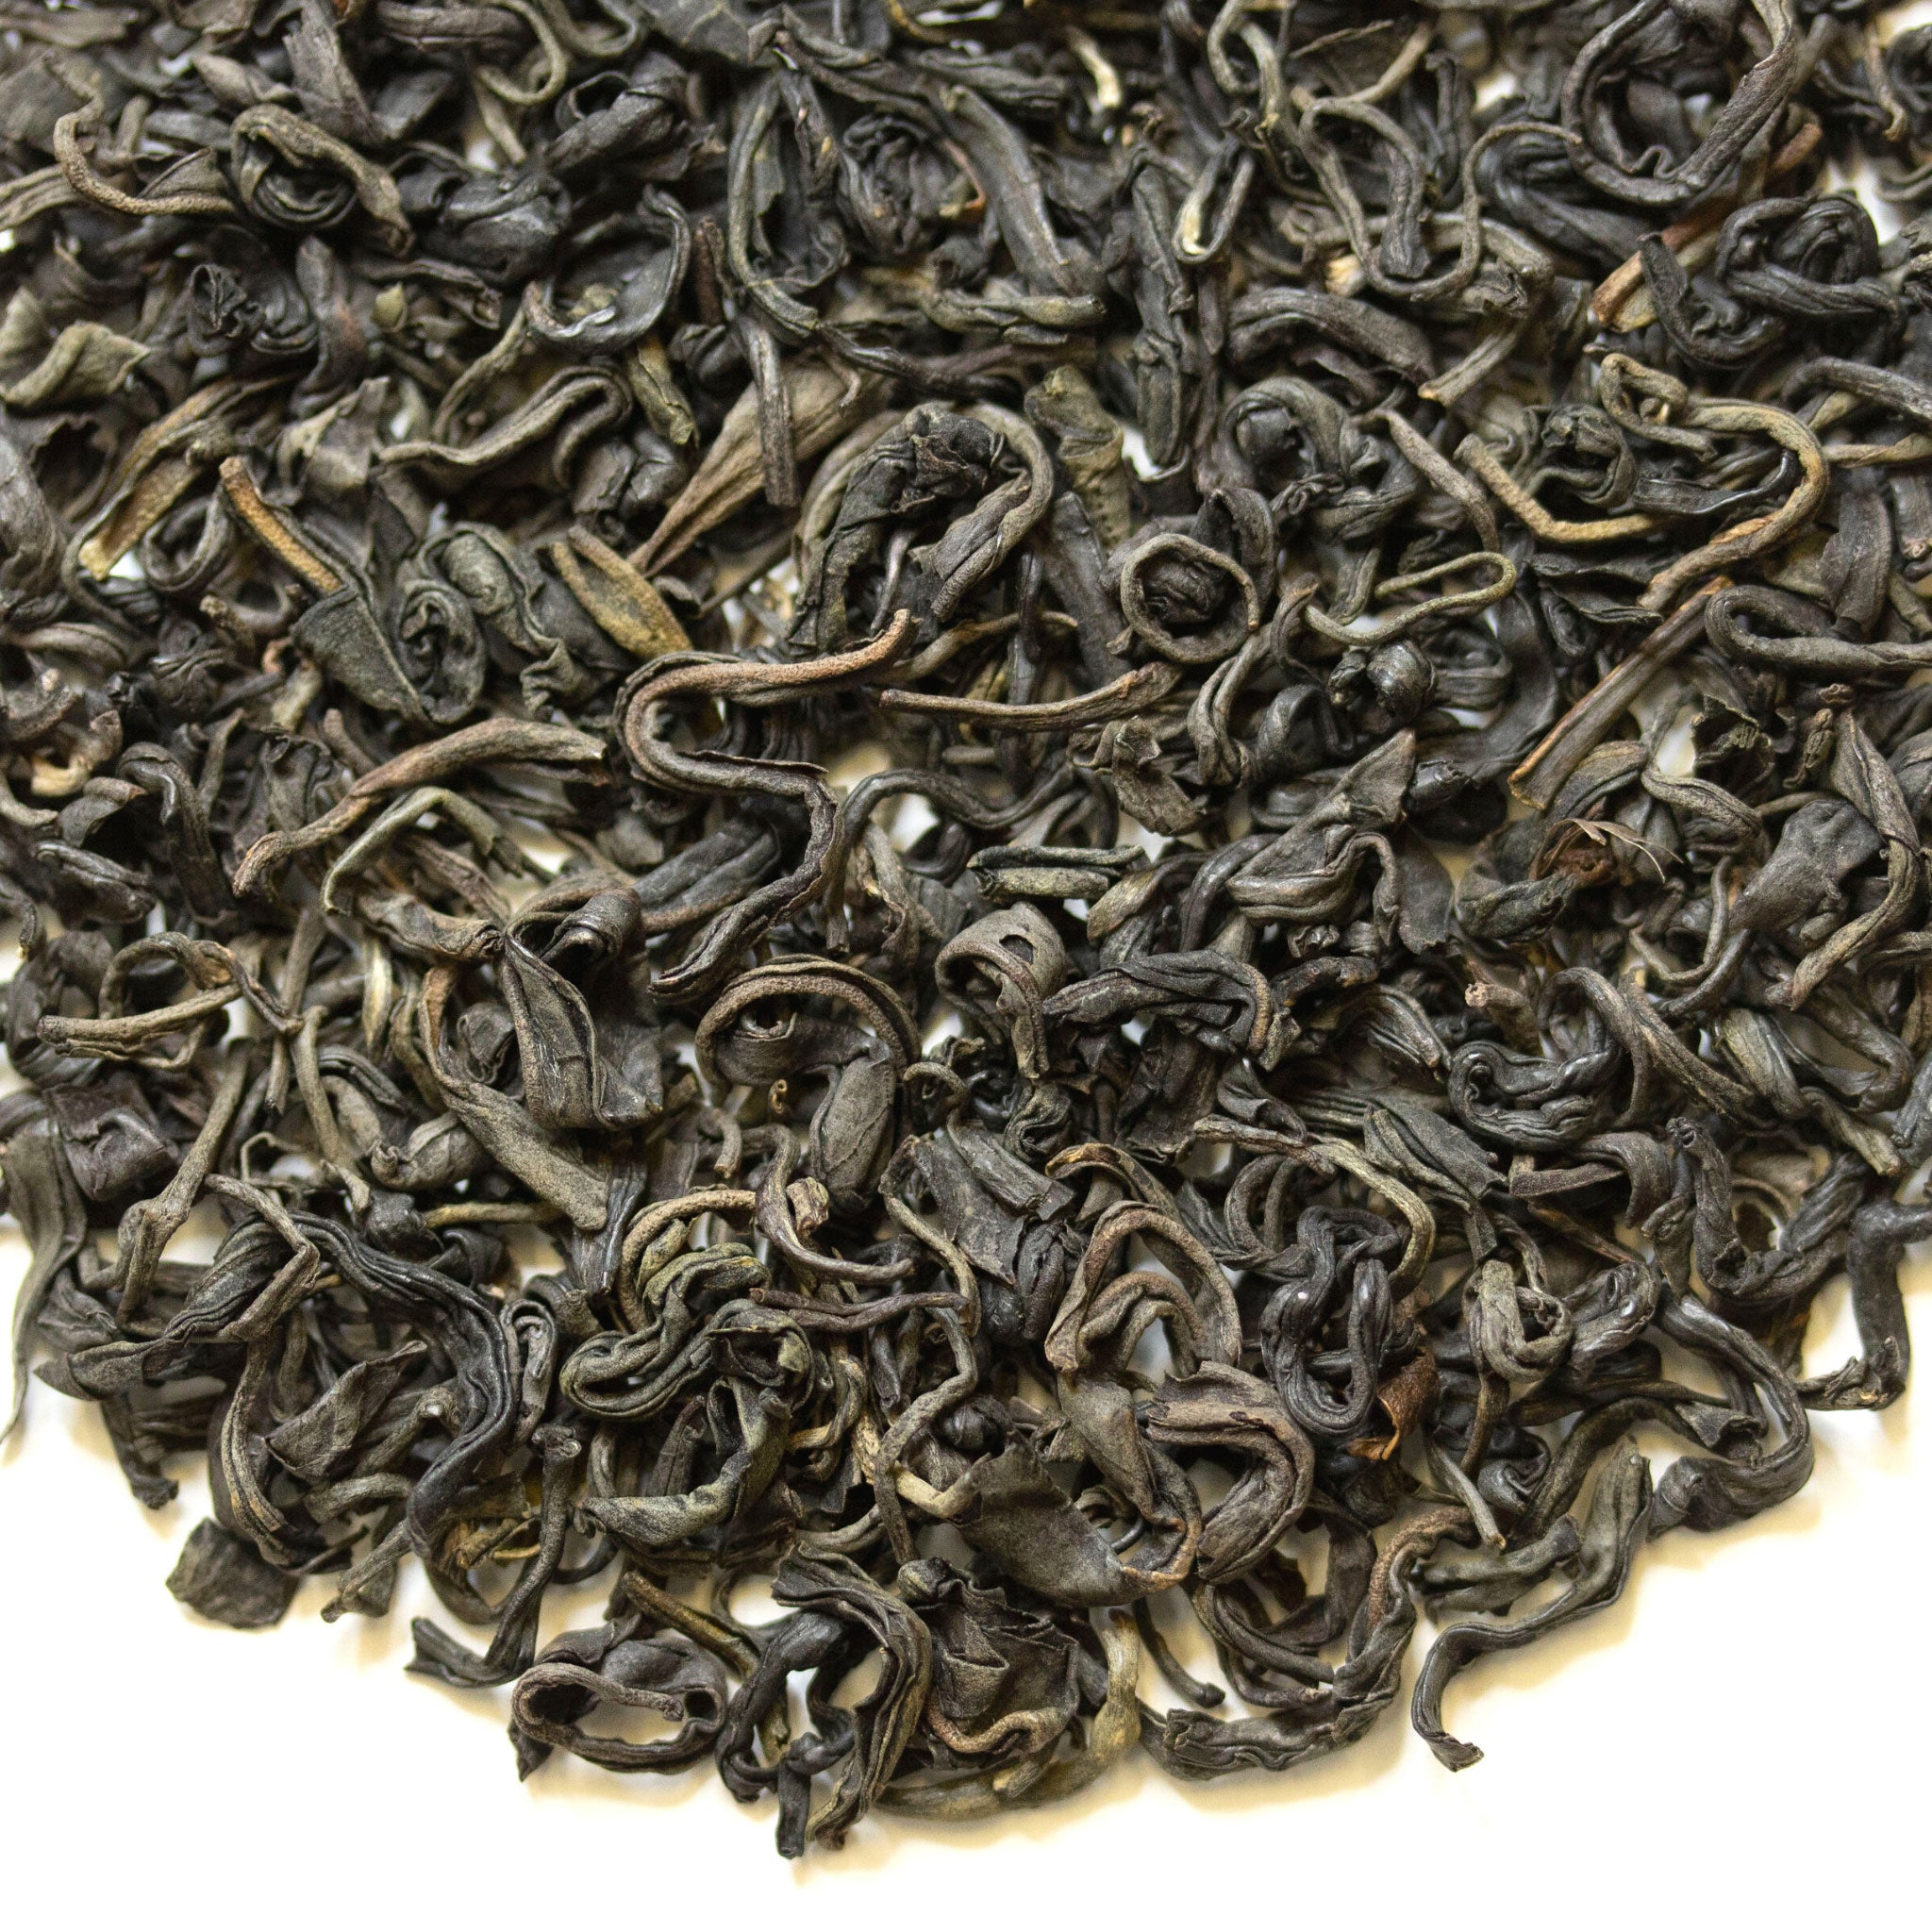 Loose leaf Kenya Purple tea